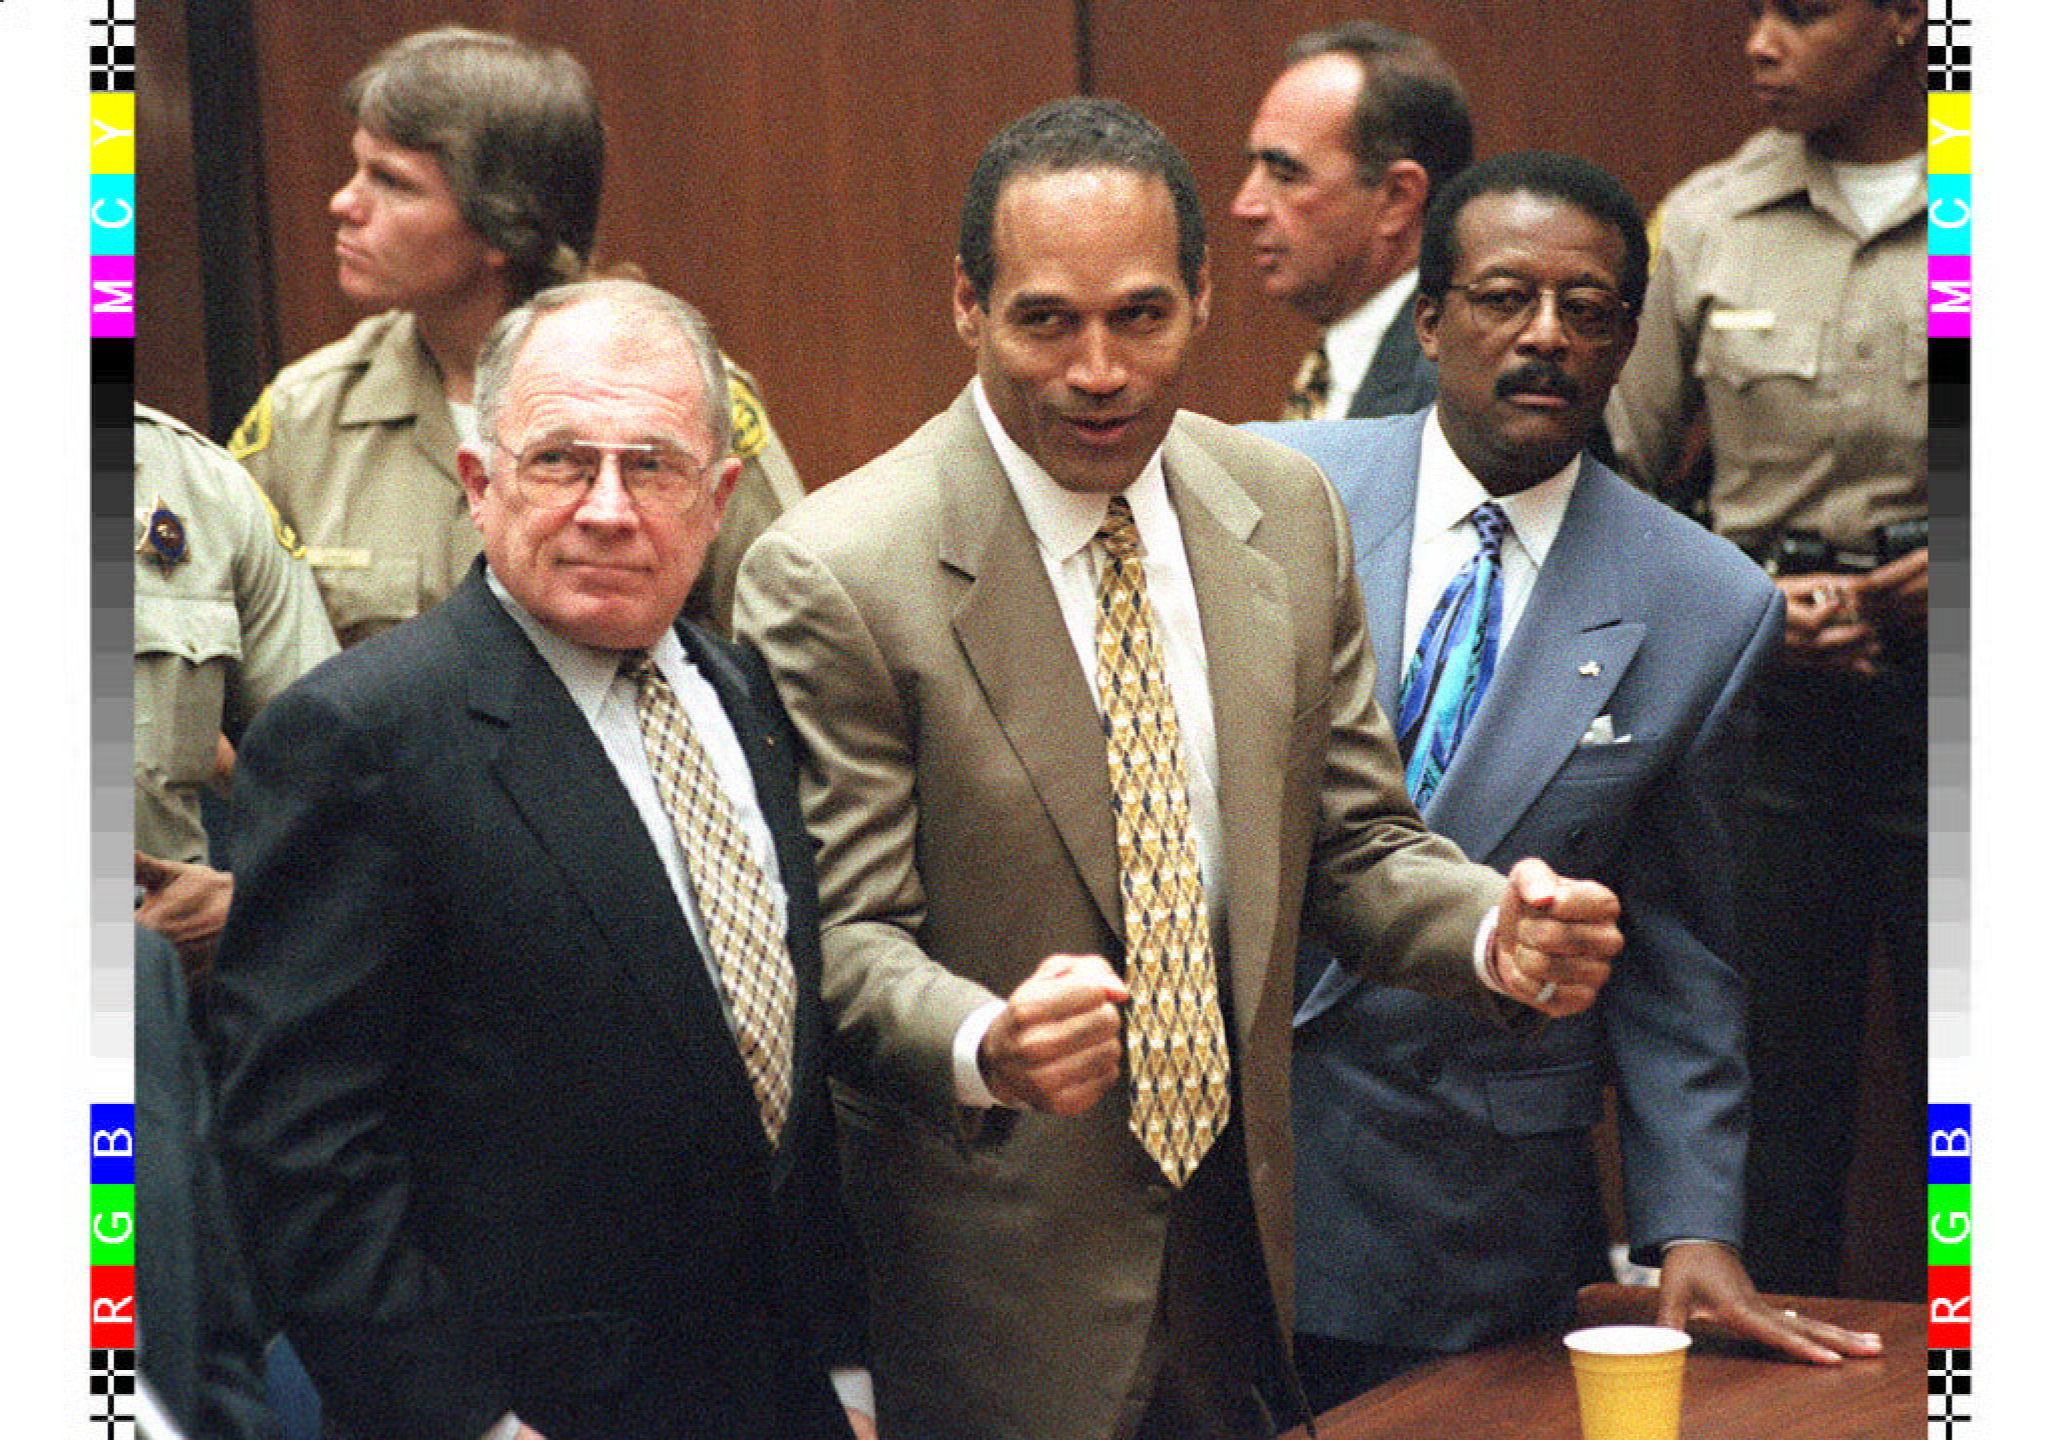 O. J. Simpson reacciona, luego de escuchar el veredicto el cual lo declaró inocente en el caso de doble asesinato llevado en su contra. Lo acompañan sus abogados, F. Lee Bailey (izquierda) y Johnnie Cochran (derecha).